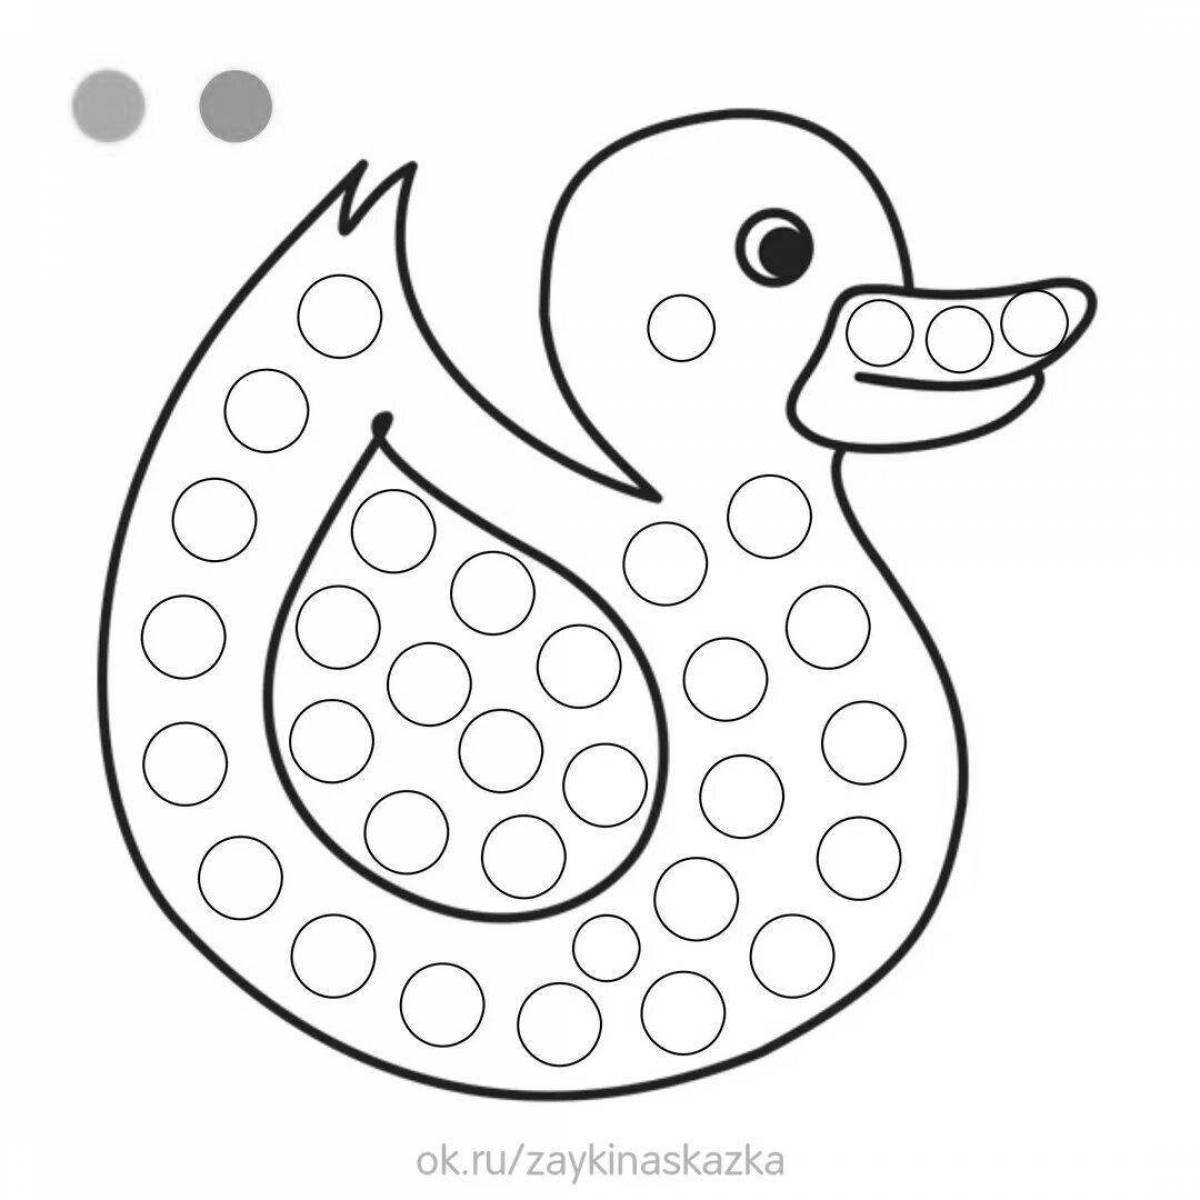 Adorable hazy duck coloring page